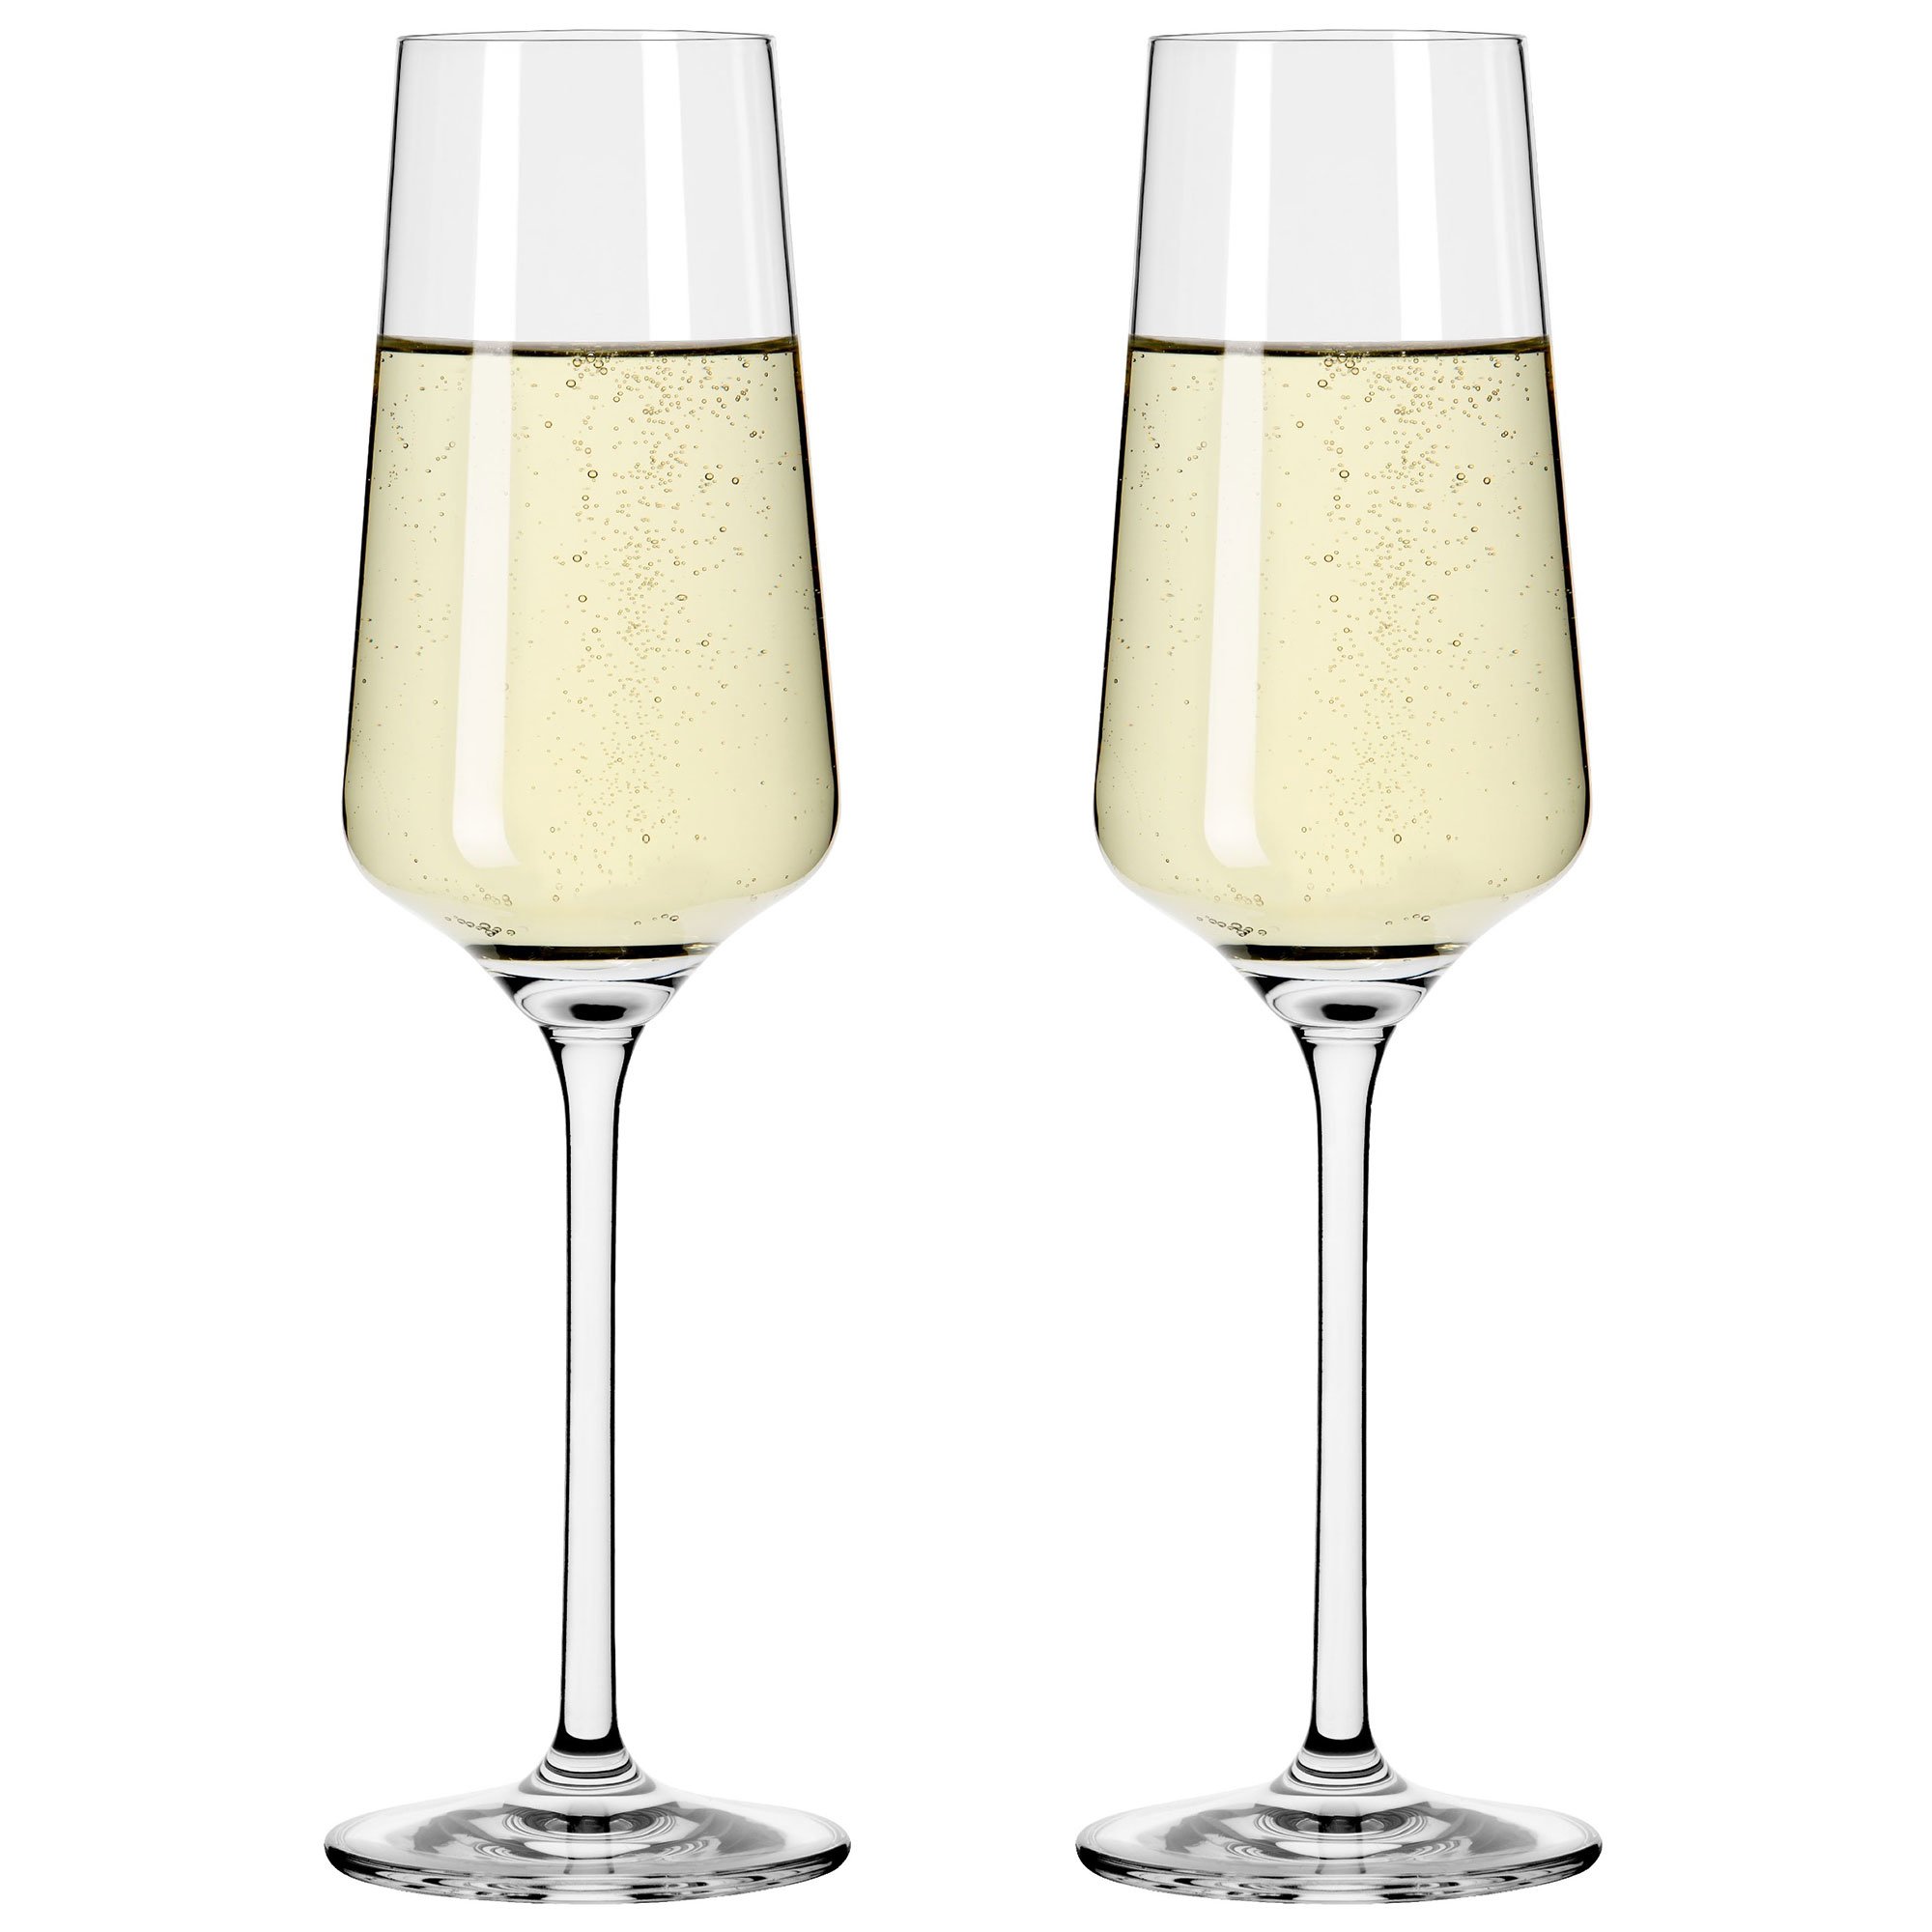 Ritzenhoff Lichtweiss champagneglas, 2 stk